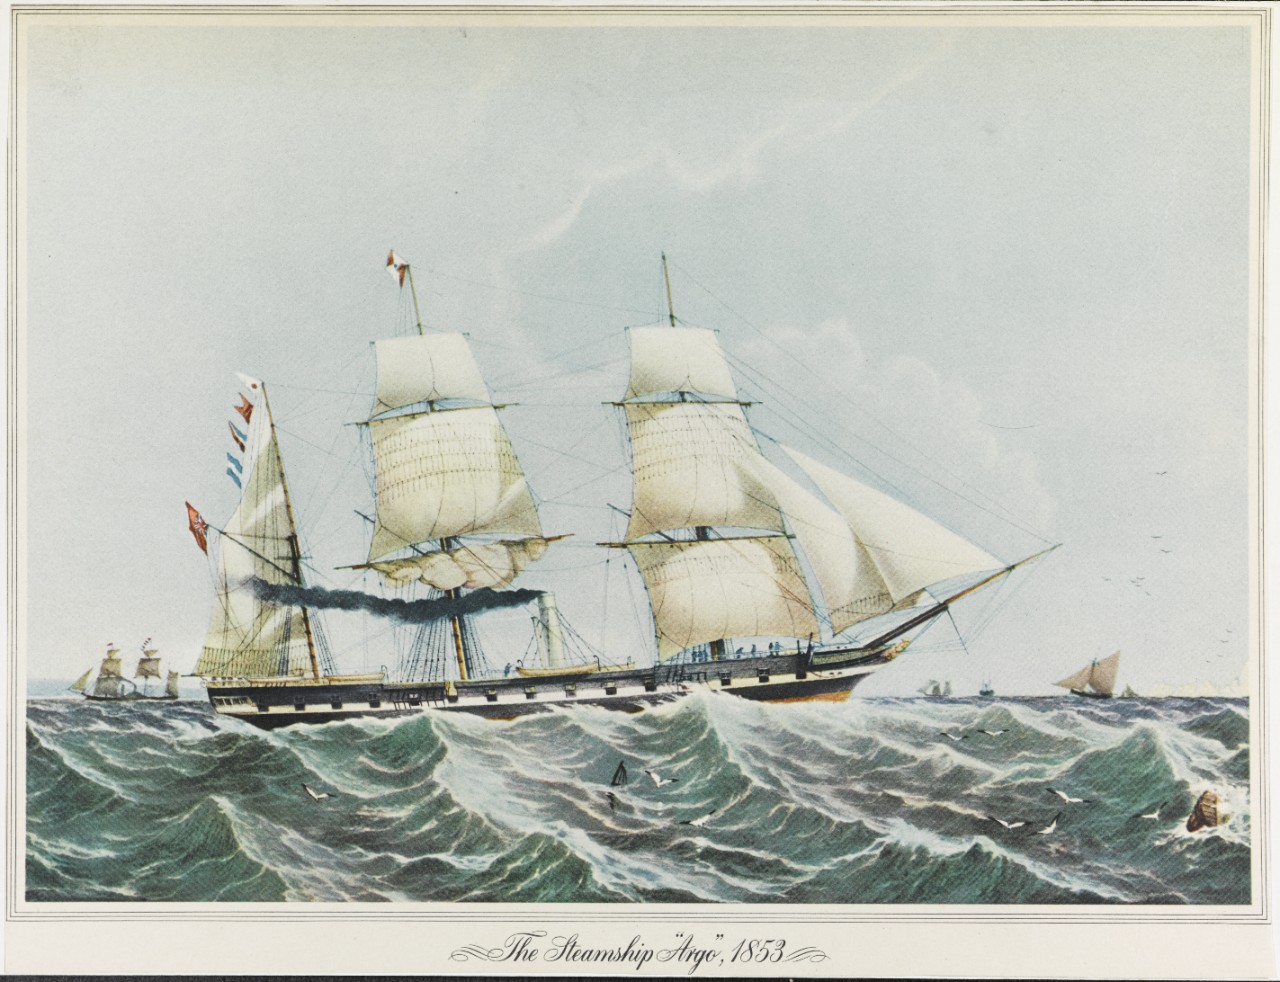 ARGO (British merchant steamer)